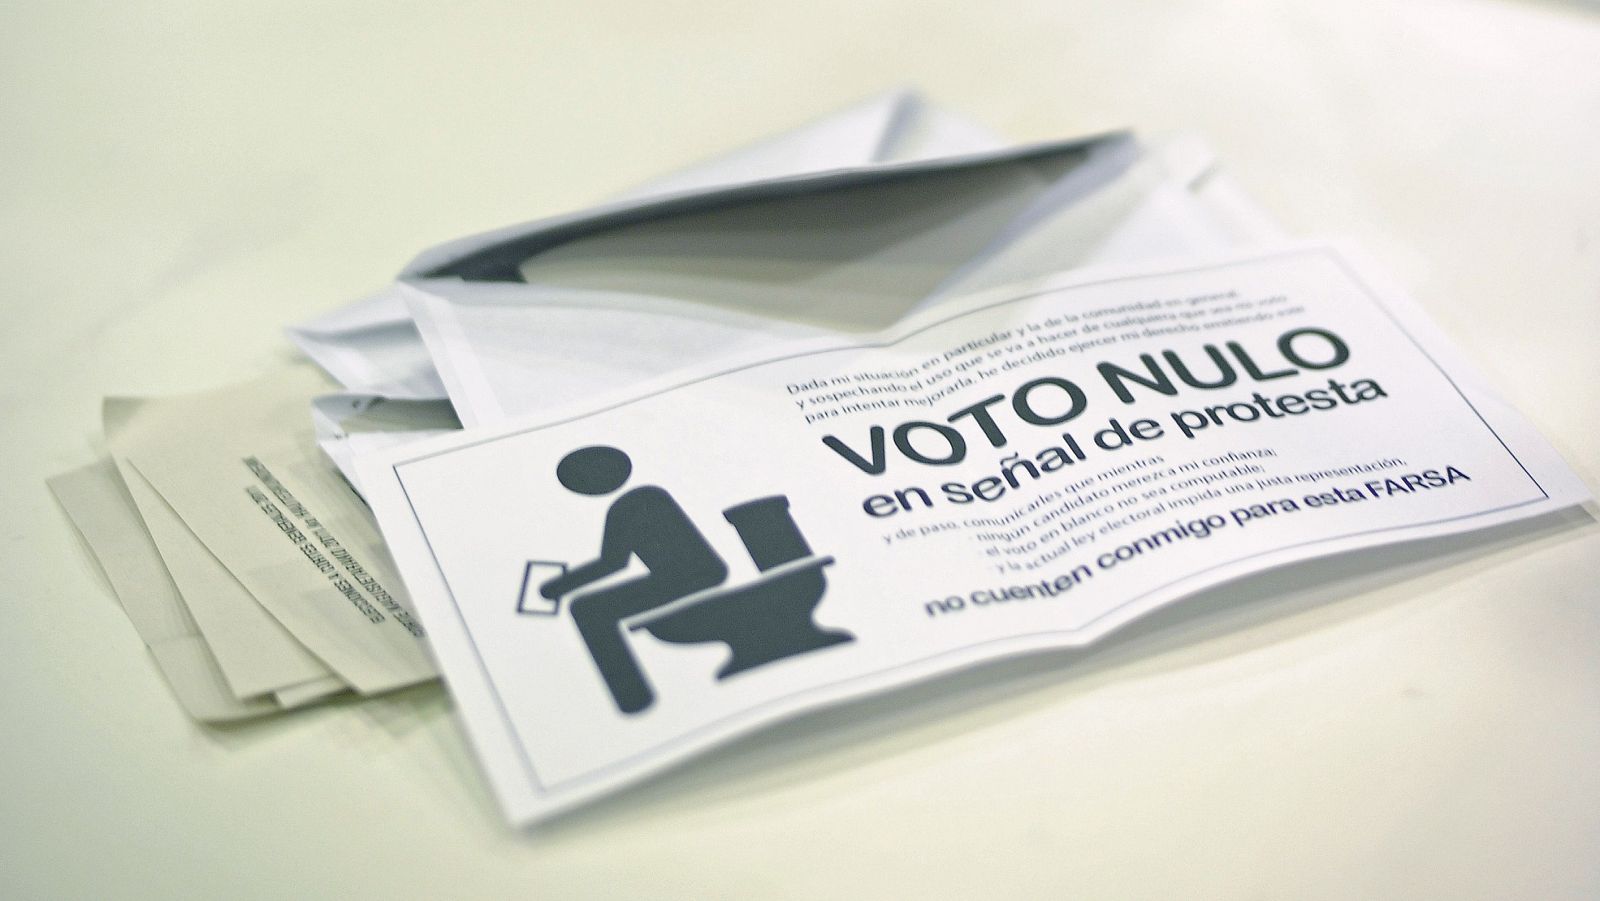 BERRIOZAR (NAVARRA), 20/11/2011.- Imagen de los votos nulos en una de las mesas electorales durante el recuento de votos de las elecciones generales, tras el cierre de los colegios electorales.